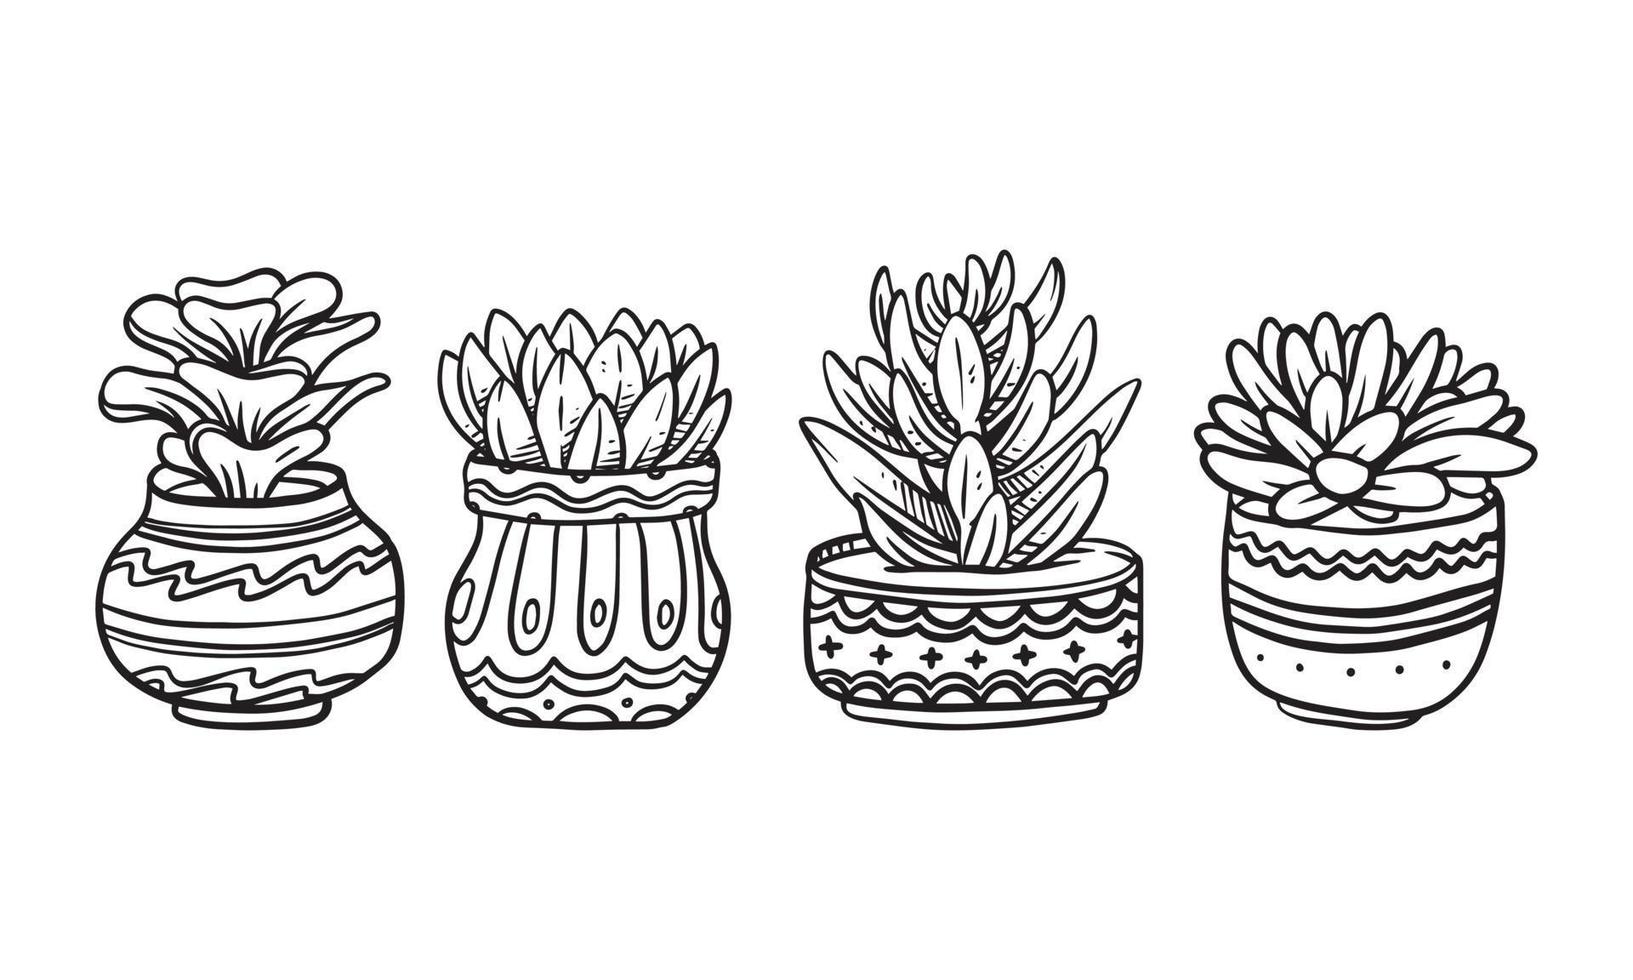 Conjunto de ilustración de vector dibujado a mano de planta en maceta, elementos gráficos aislados de plantas para el diseño, planta suculenta con ilustración de hojas para crear un diseño romántico o vintage.